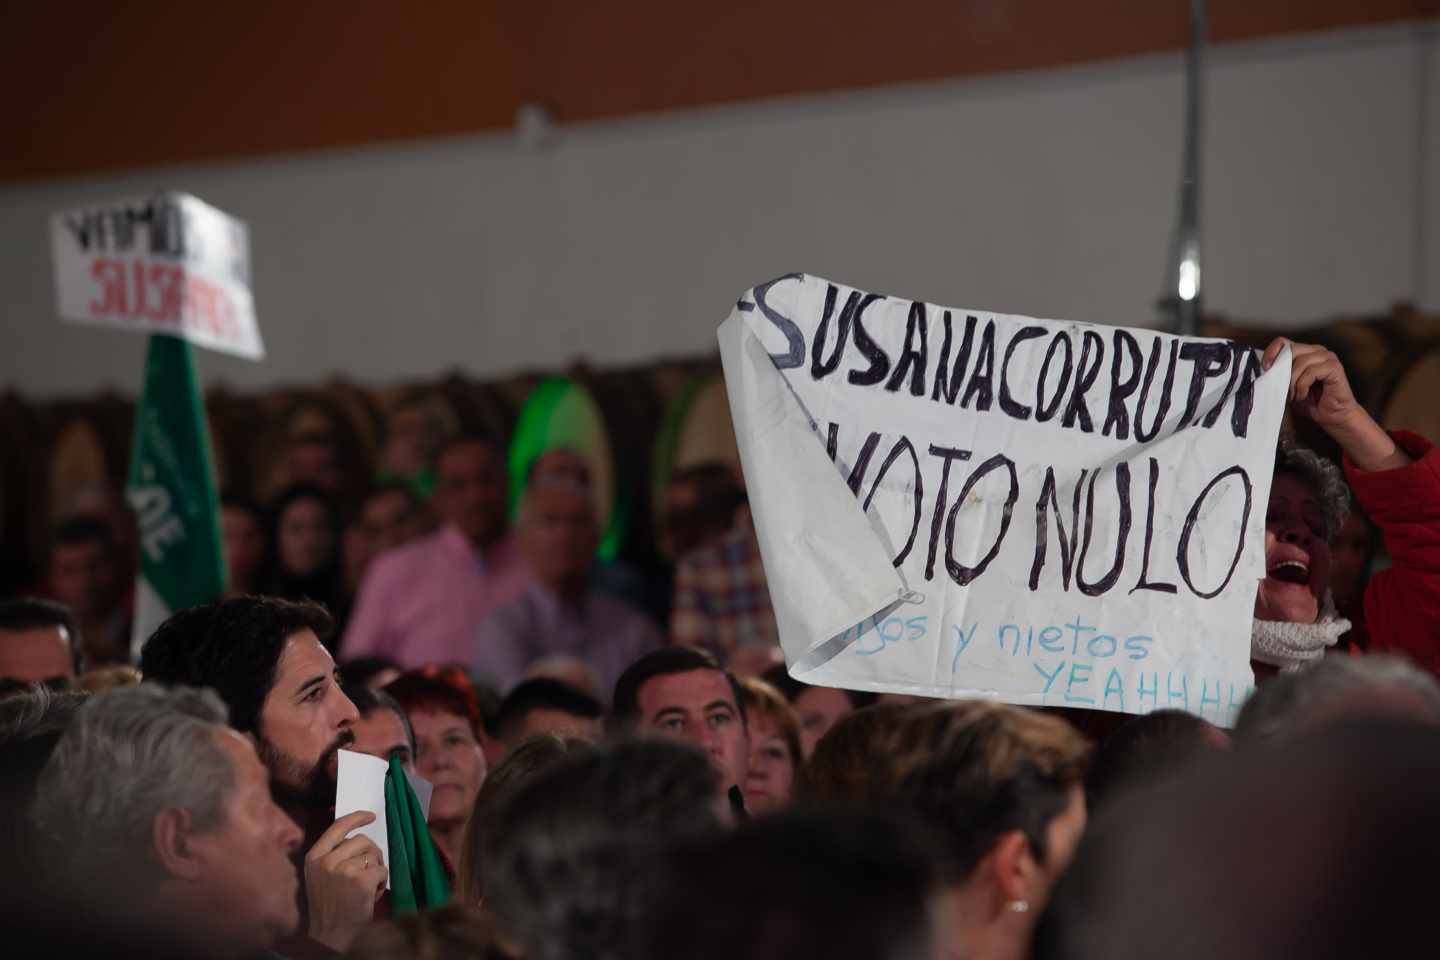 Desalojan del mitin de Sánchez y Díaz a una mujer con una pancarta de "Susana corrupta"